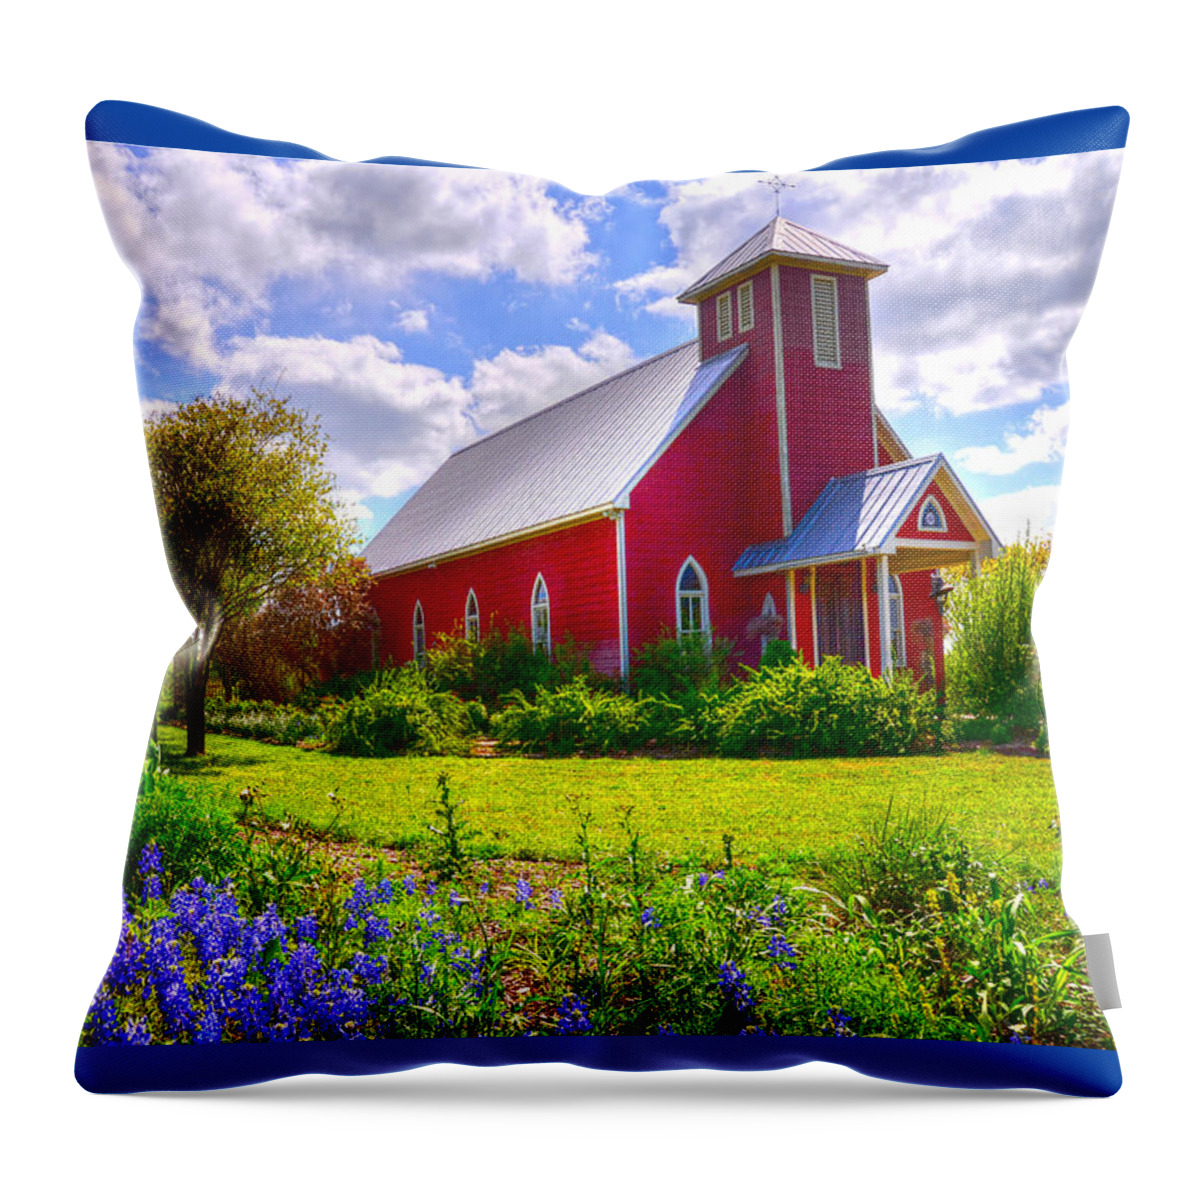 Bluebonnet Throw Pillow featuring the photograph Bluebonnet Wedding Chapel by Lynn Bauer